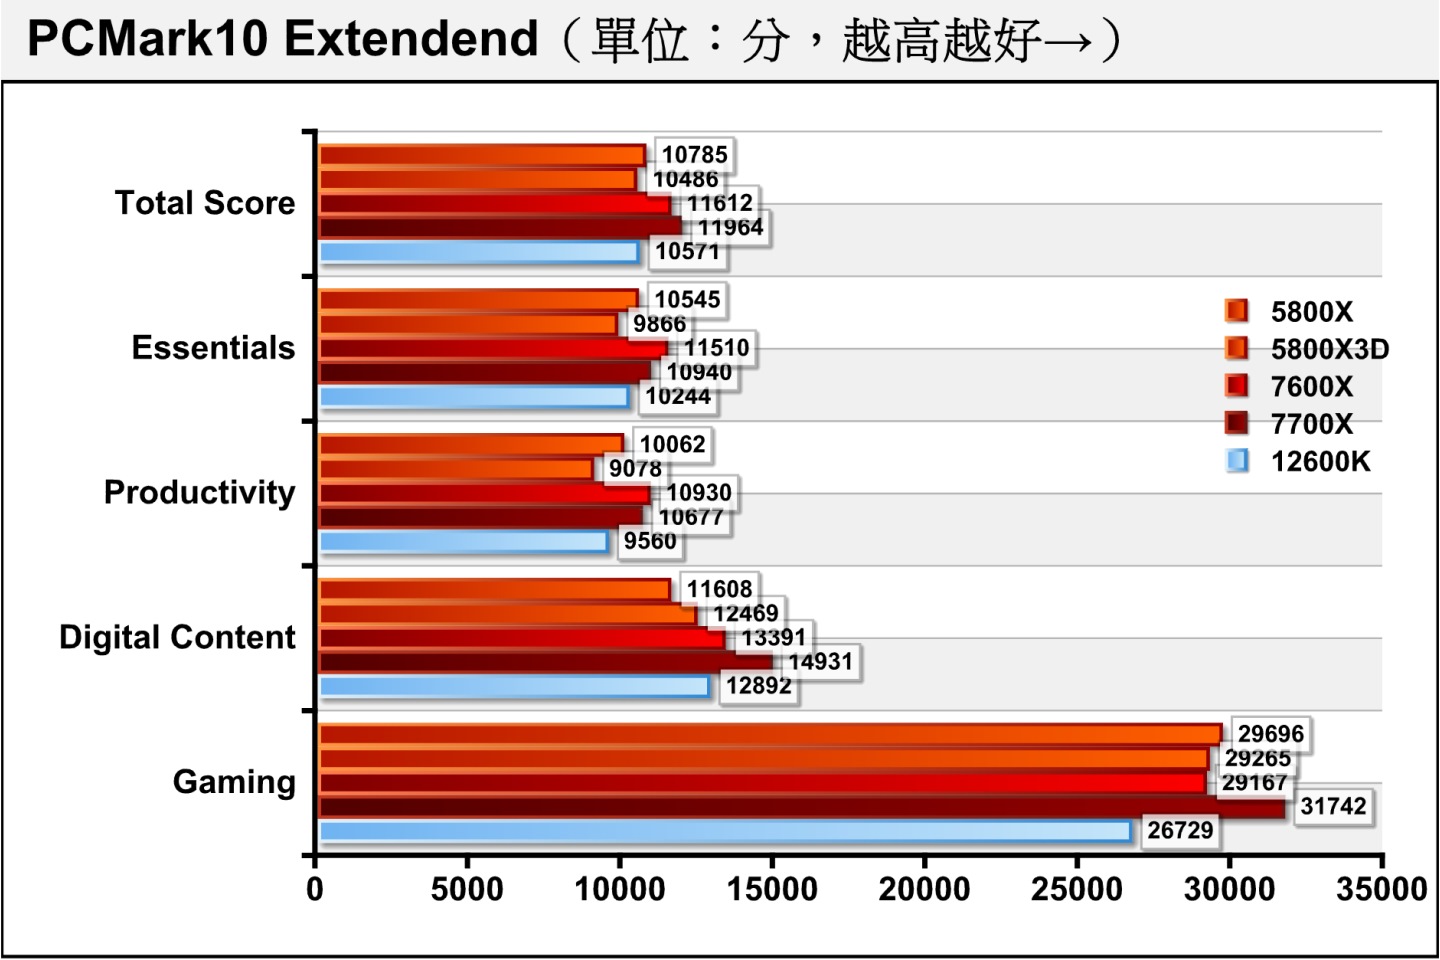 在綜合效能測試項目PCMark10 Extendend，Ryzen 5 7600X總分僅落後Ryzen 7 7700X約2.94%，差距並不大。至於與競對手Core i5-12600K相比則領先9.85%。